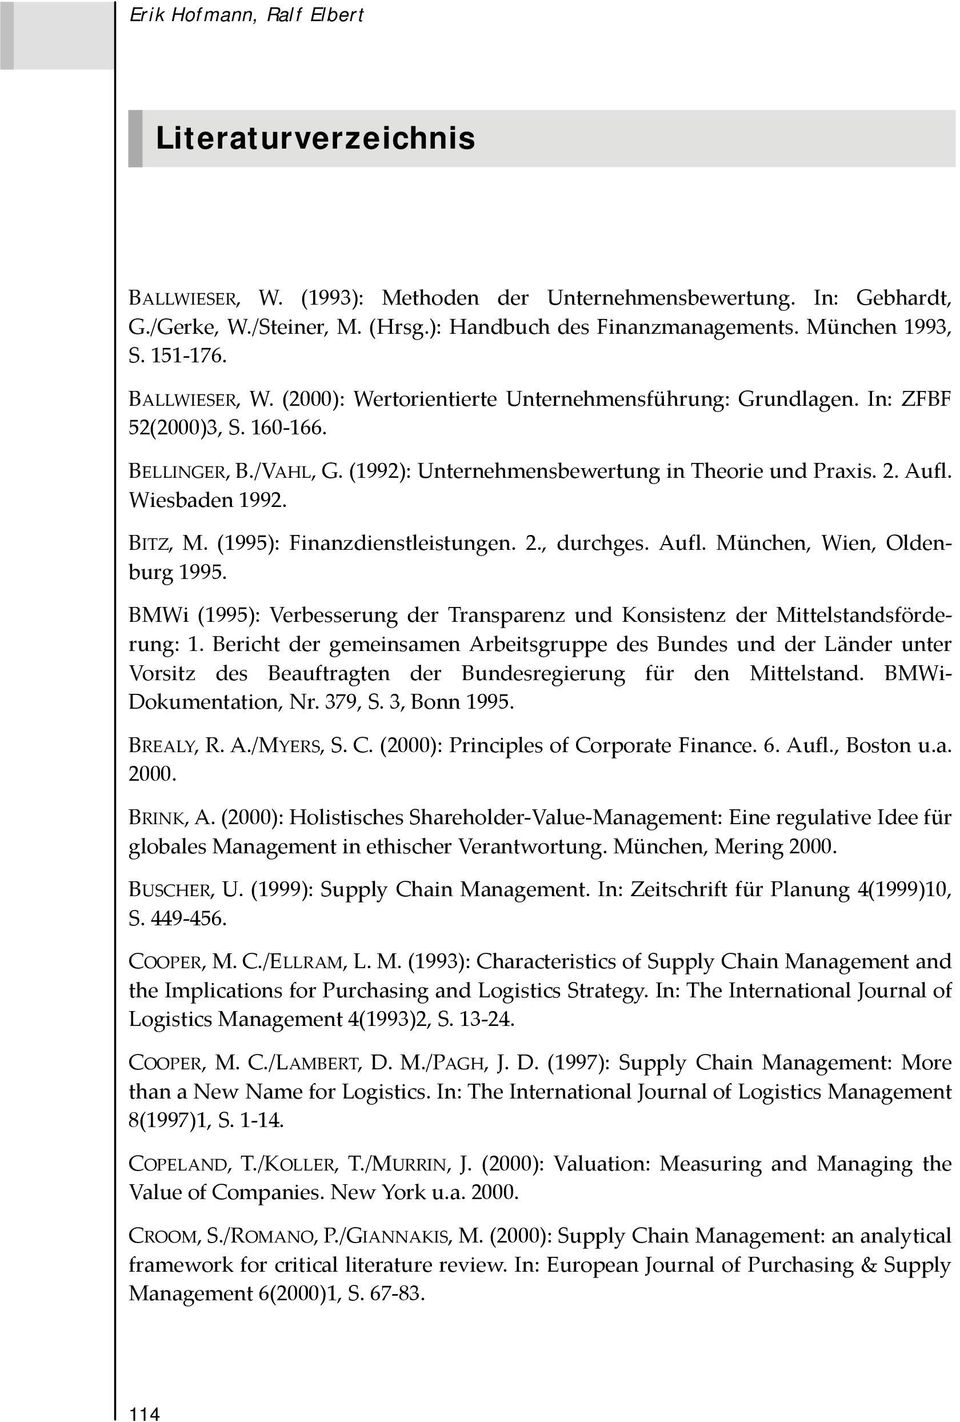 (1992): Unternehmensbewertung in Theorie und Praxis. 2. Aufl. Wiesbaden 1992. BITZ, M. (1995): Finanzdienstleistungen. 2., durchges. Aufl. München, Wien, Oldenburg 1995.